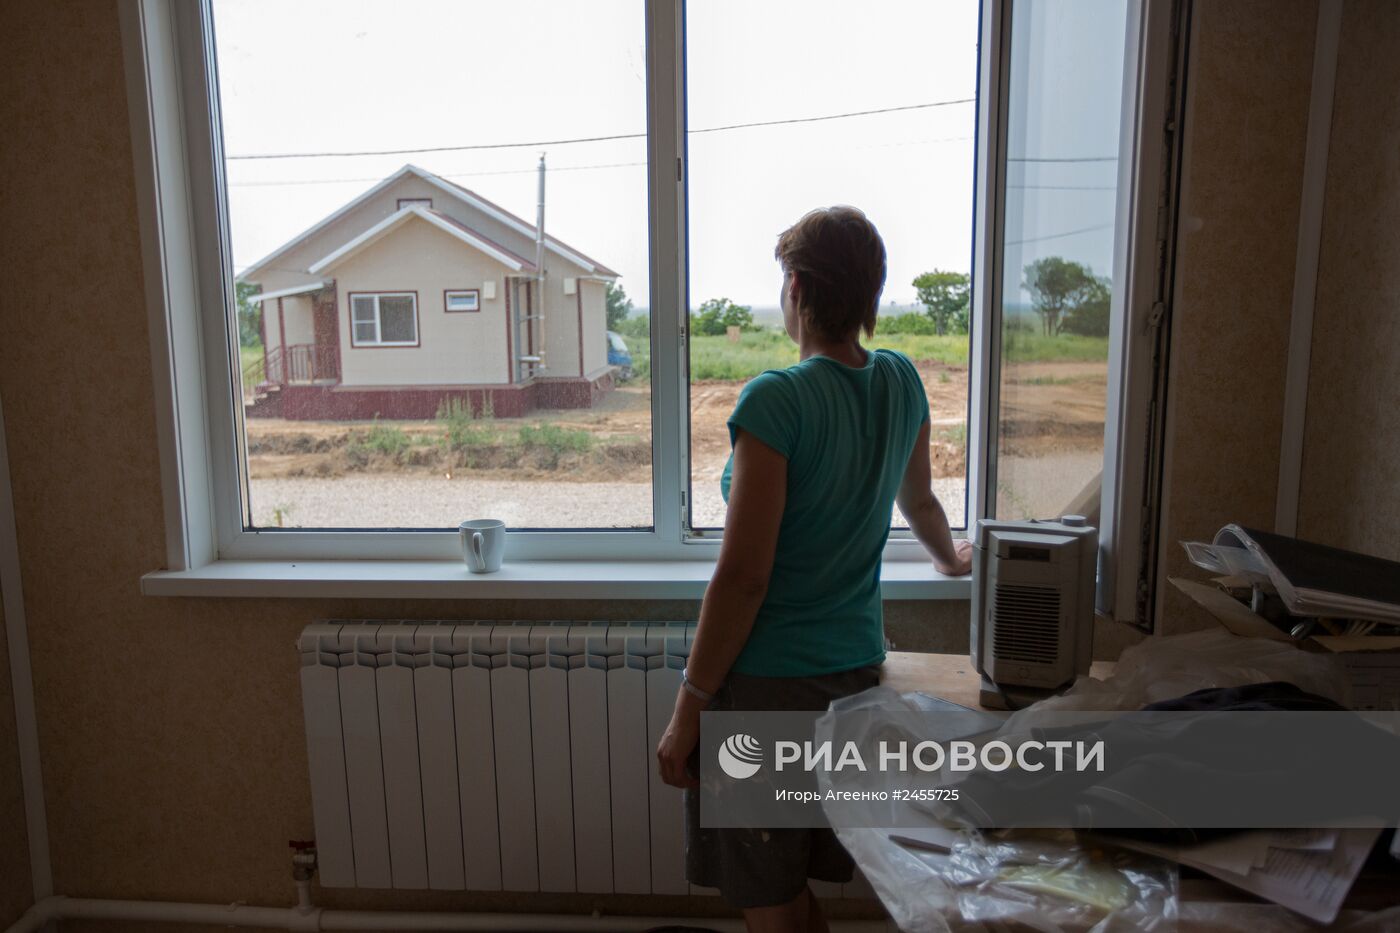 Cтроительство домов для пострадавших от паводка в Амурской области Cтроительство домов для пострадавших от паводка в Амурской области